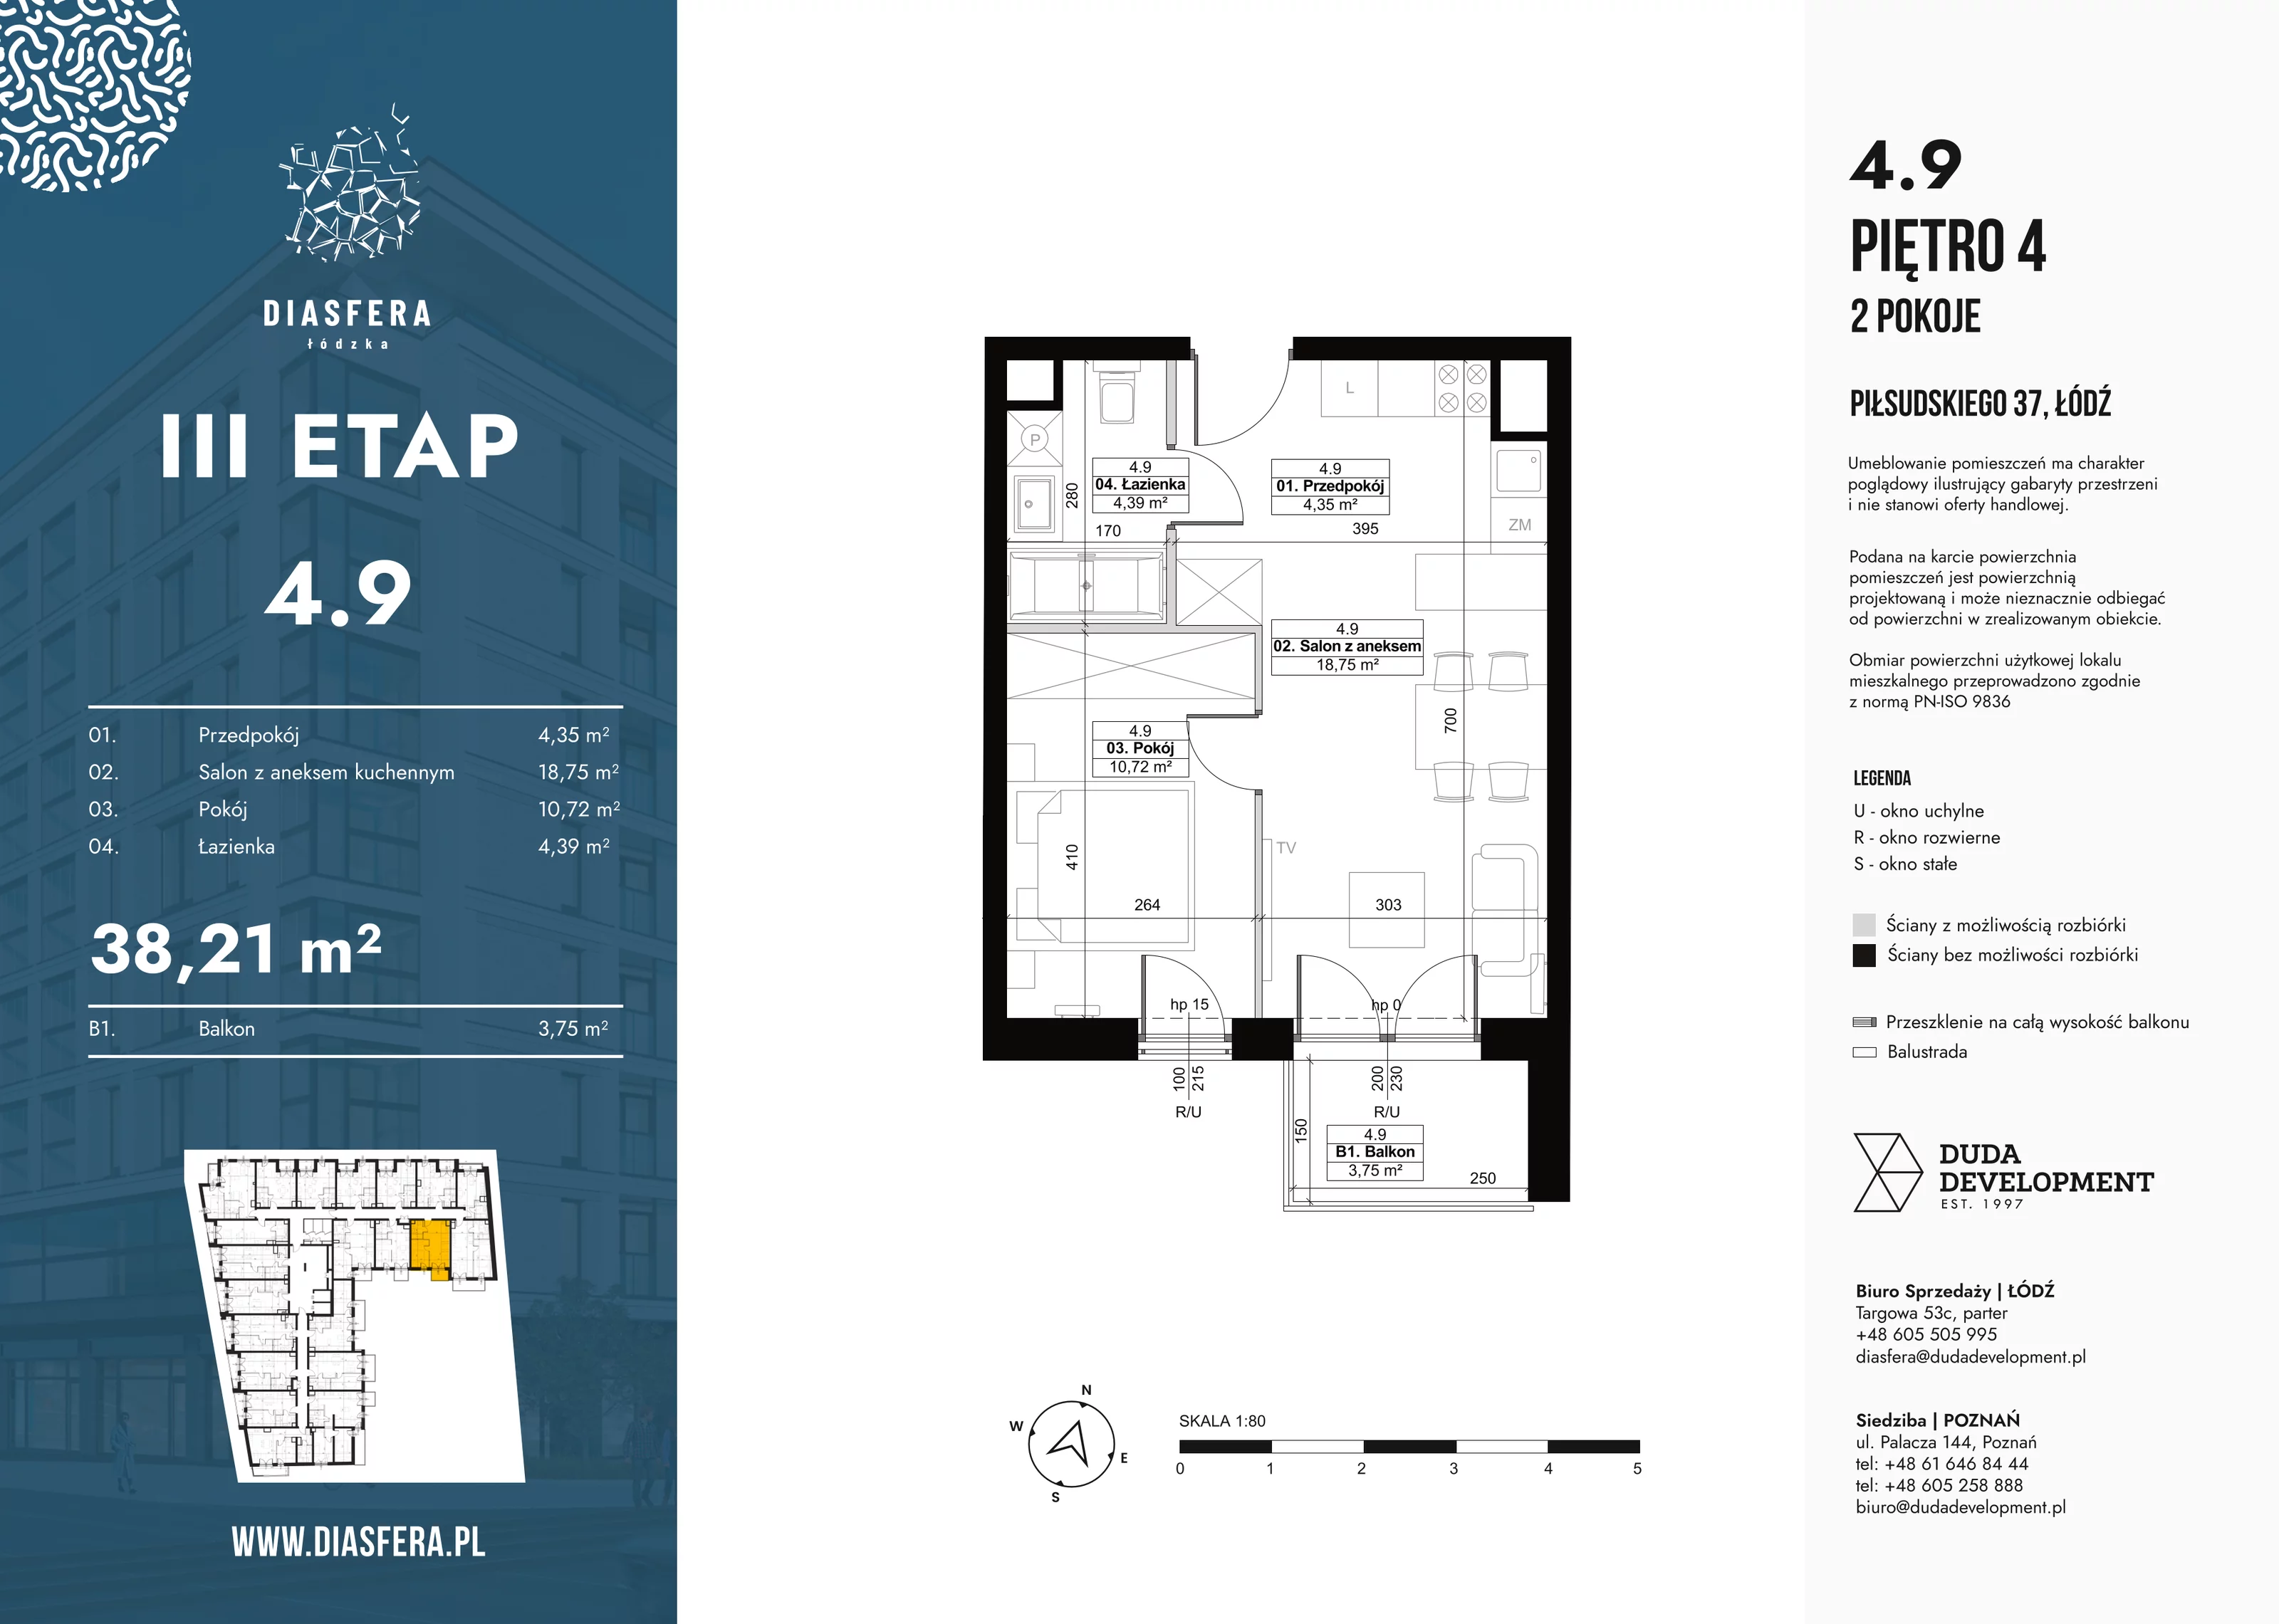 Mieszkanie 38,21 m², piętro 4, oferta nr 4_9, Diasfera III, Łódź, Śródmieście, al. Piłsudskiego 37